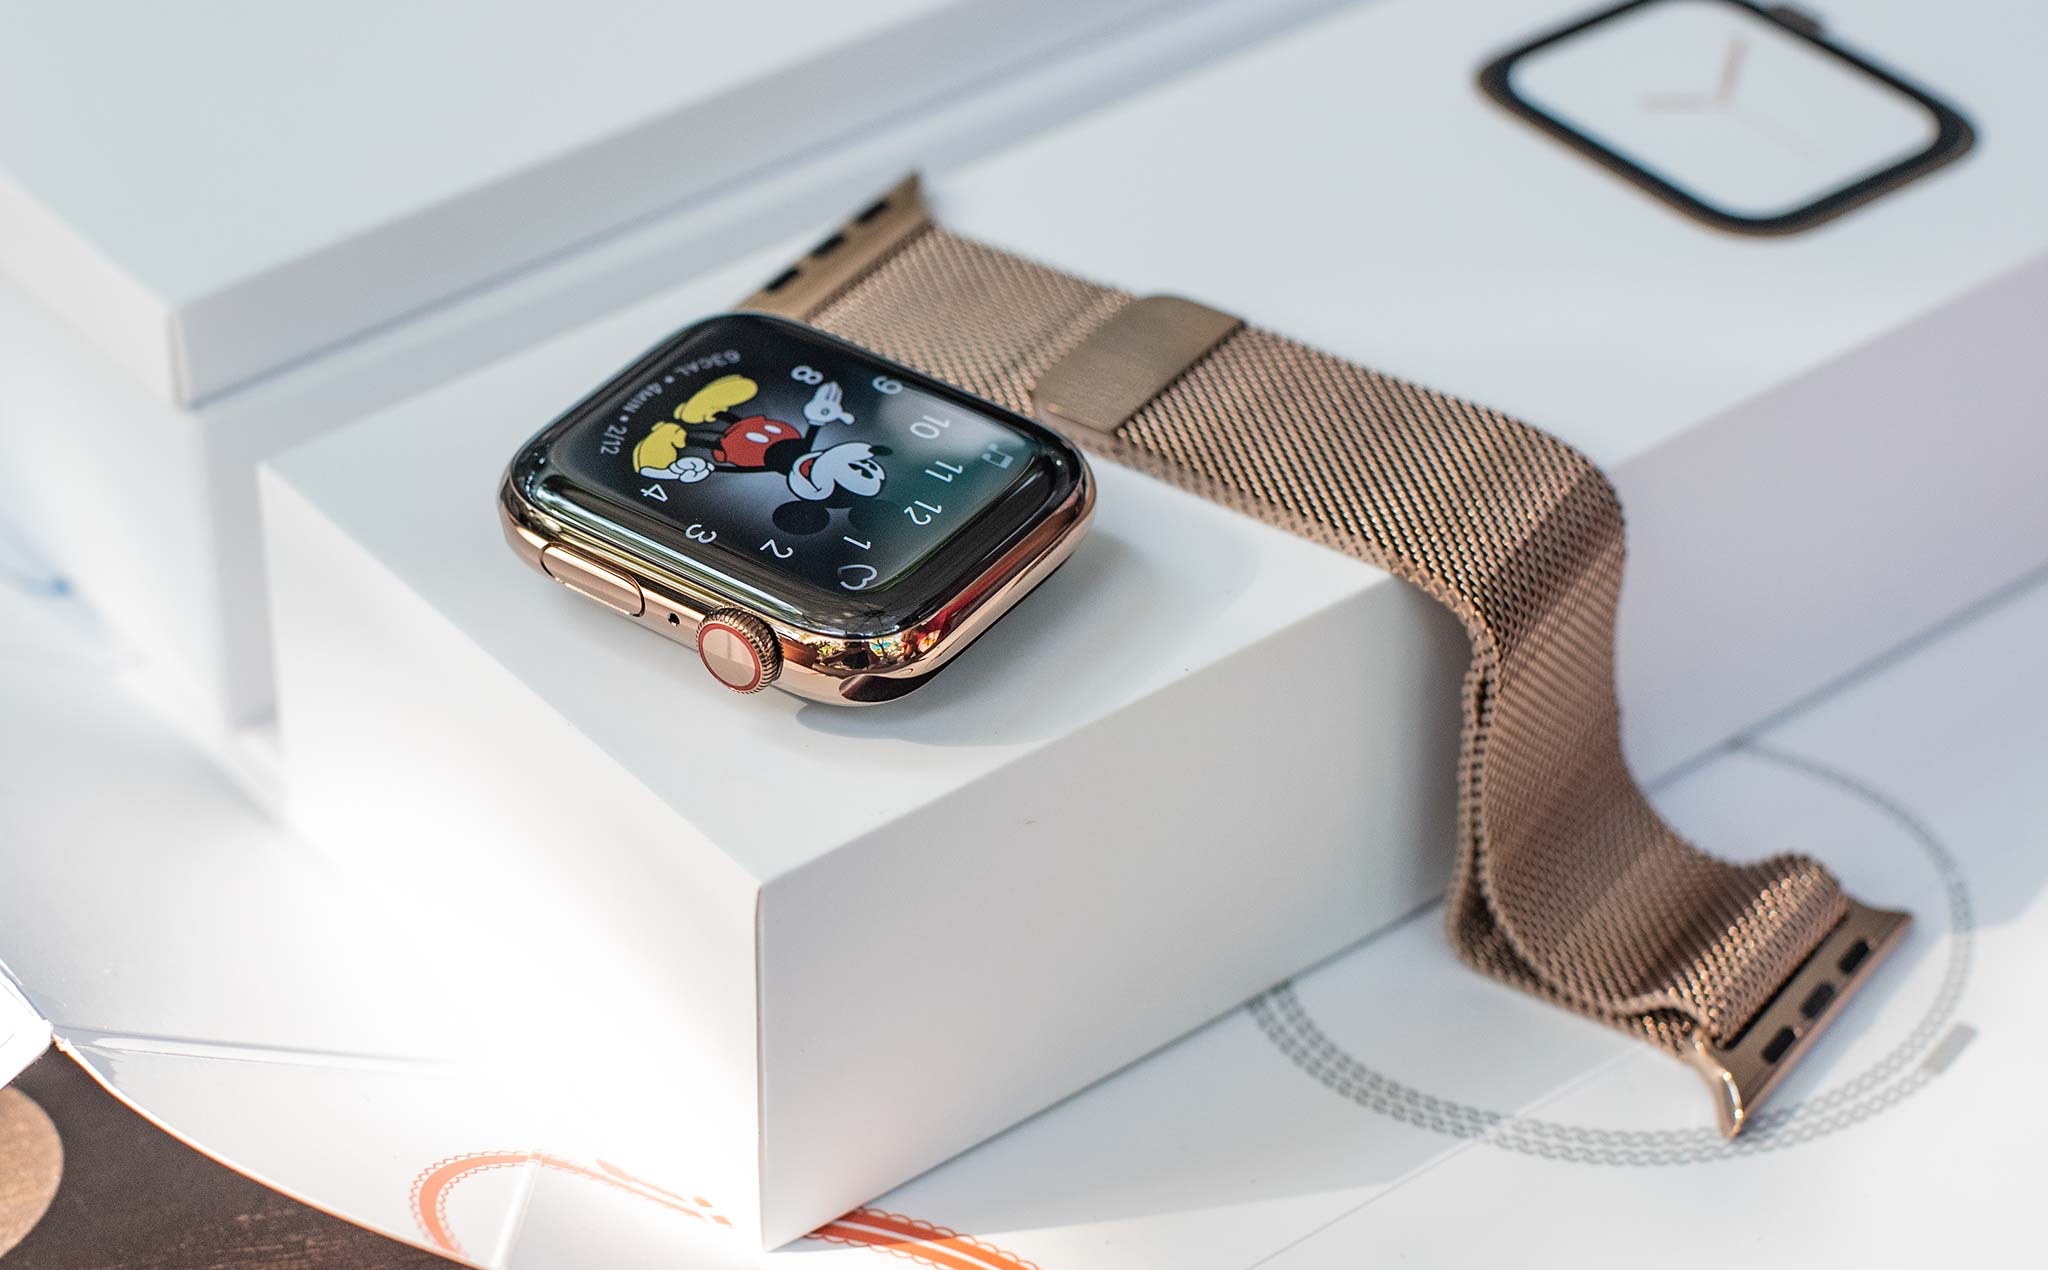 Hình ảnh Apple Watch Series 4 bản thép vàng, bóng bẩy và sang trọng